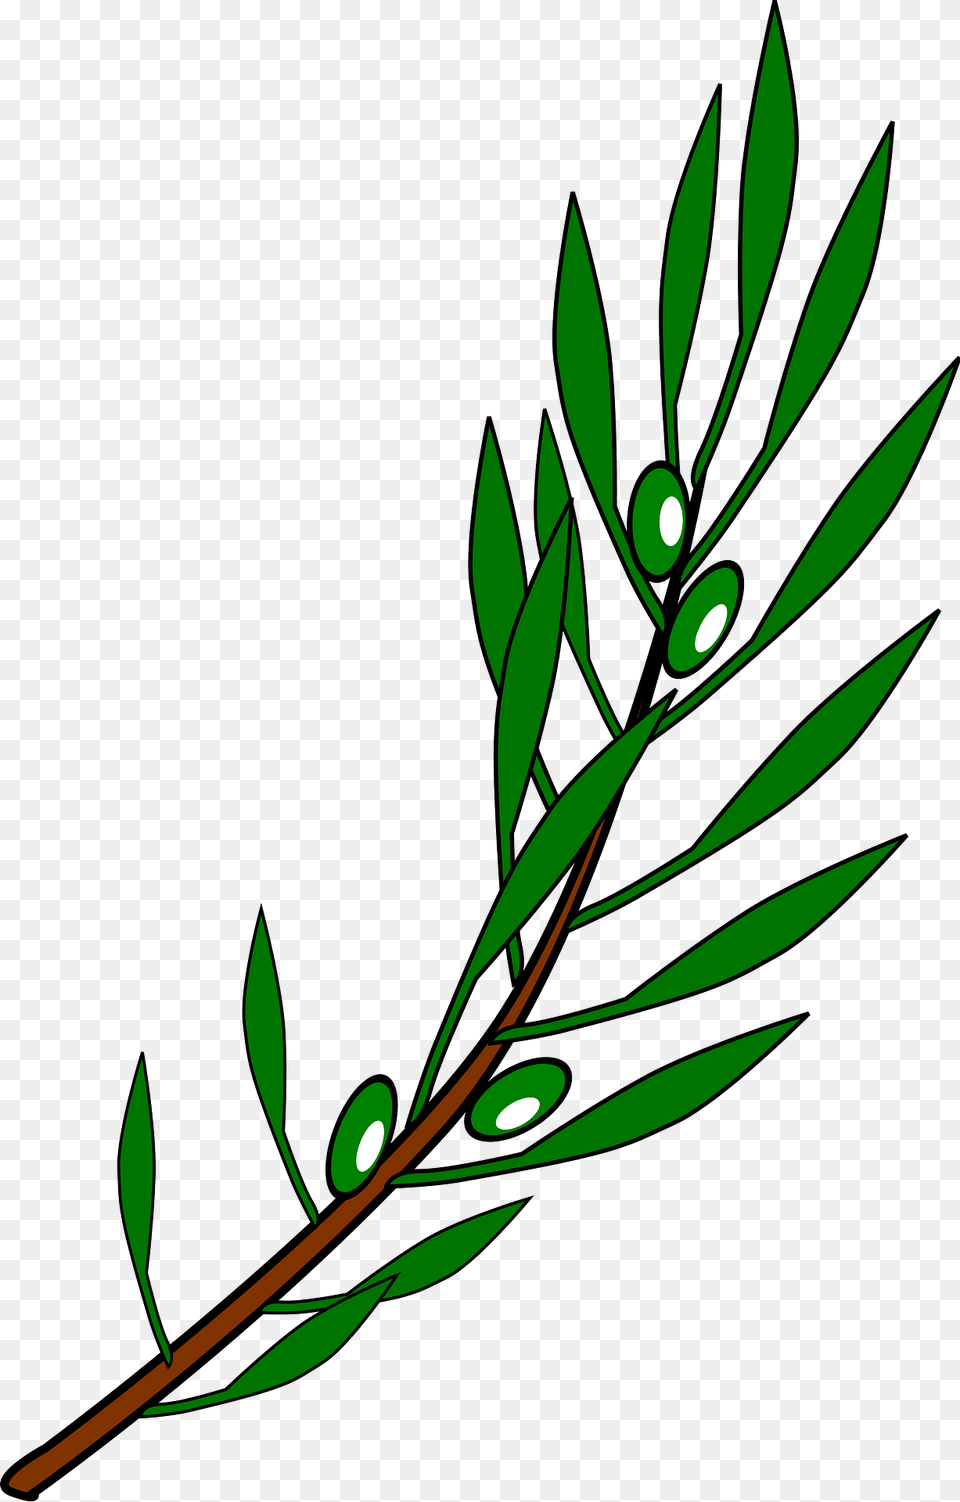 Olive Branch Drawing Clipart, Vegetation, Green, Plant, Leaf Free Transparent Png